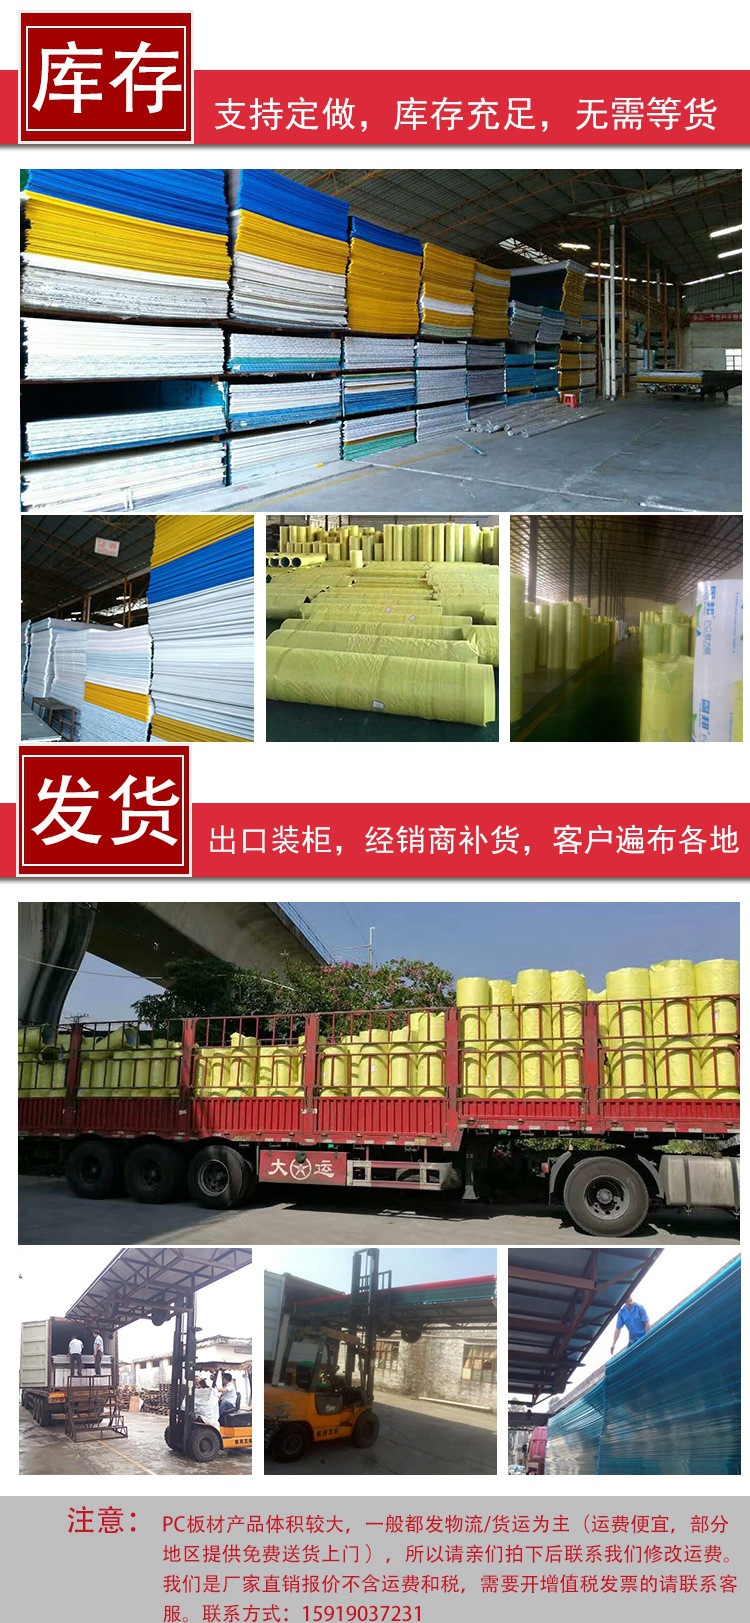 广州PC阳光板少钱一平茶色咖啡色阳光板厂家批发雨棚车棚遮阳板示例图12